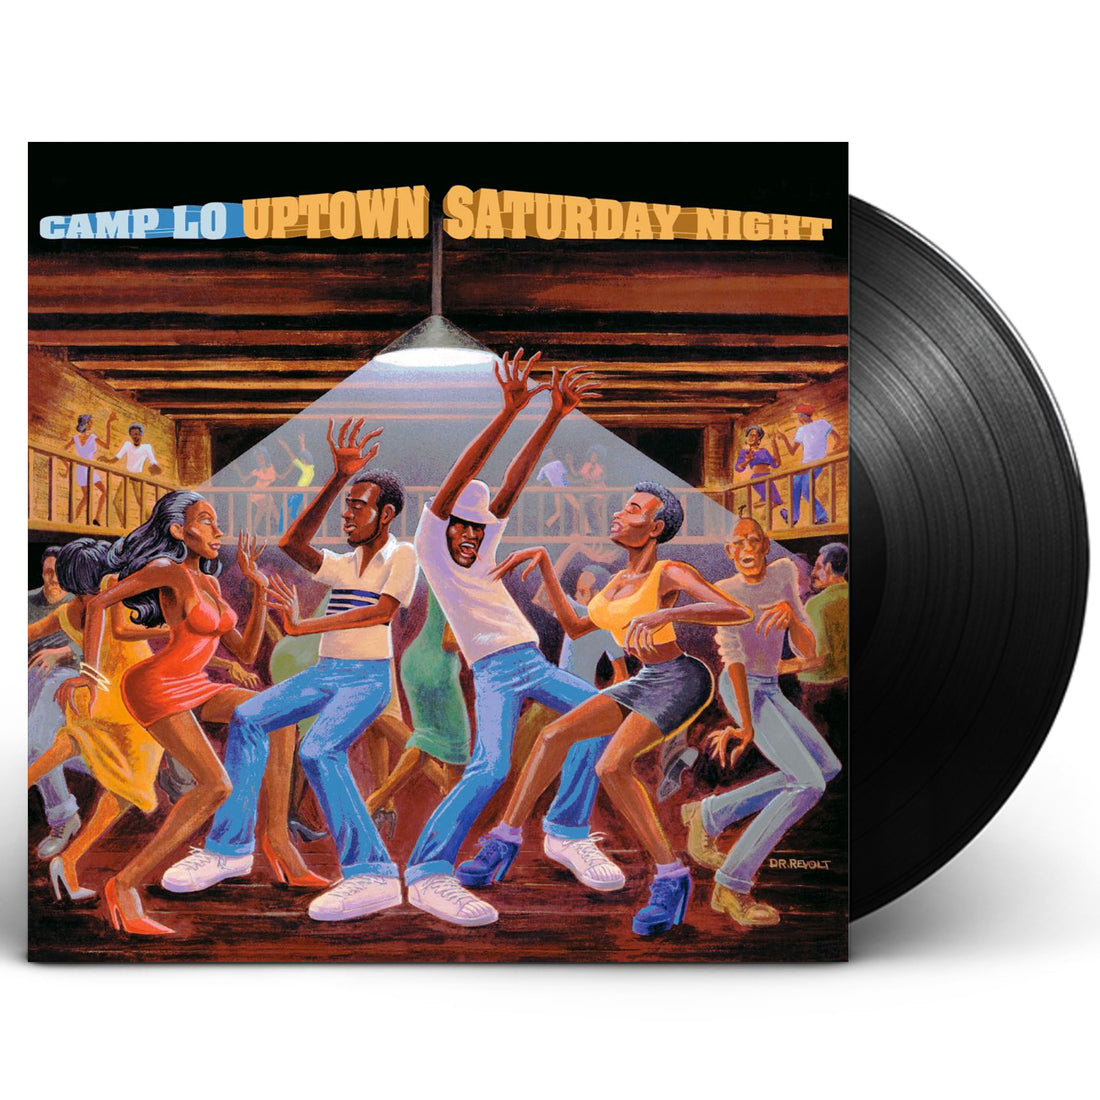 Camp Lo "Uptown Saturday Night" 2xLP Vinyl